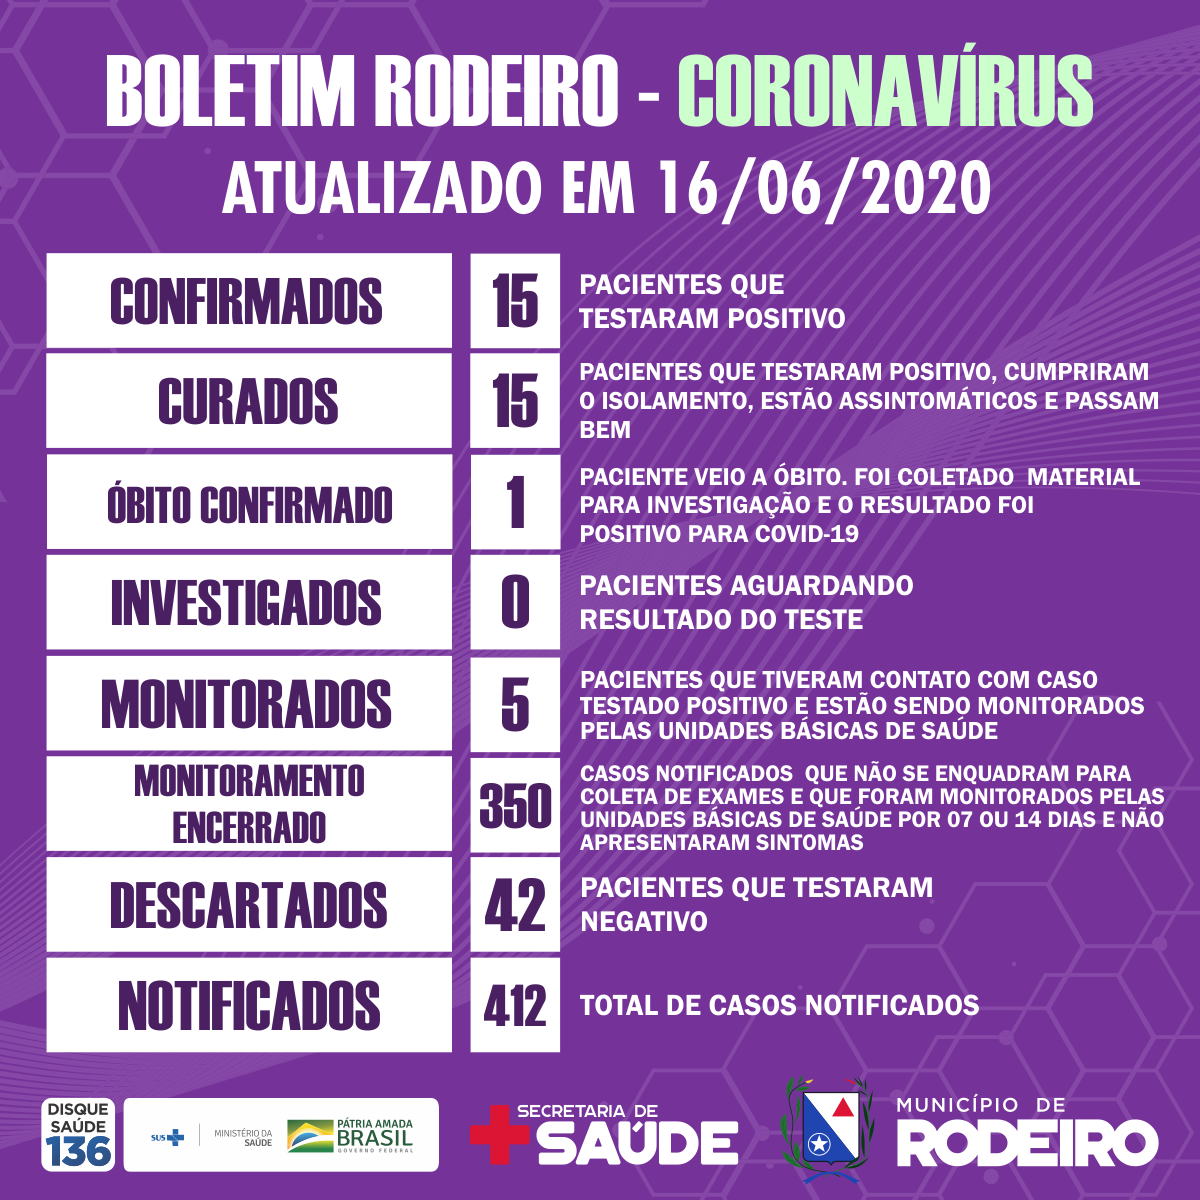 Boletim epidemiológico do Município de Rodeiro coronavírus, atualizado em 16/06/2020